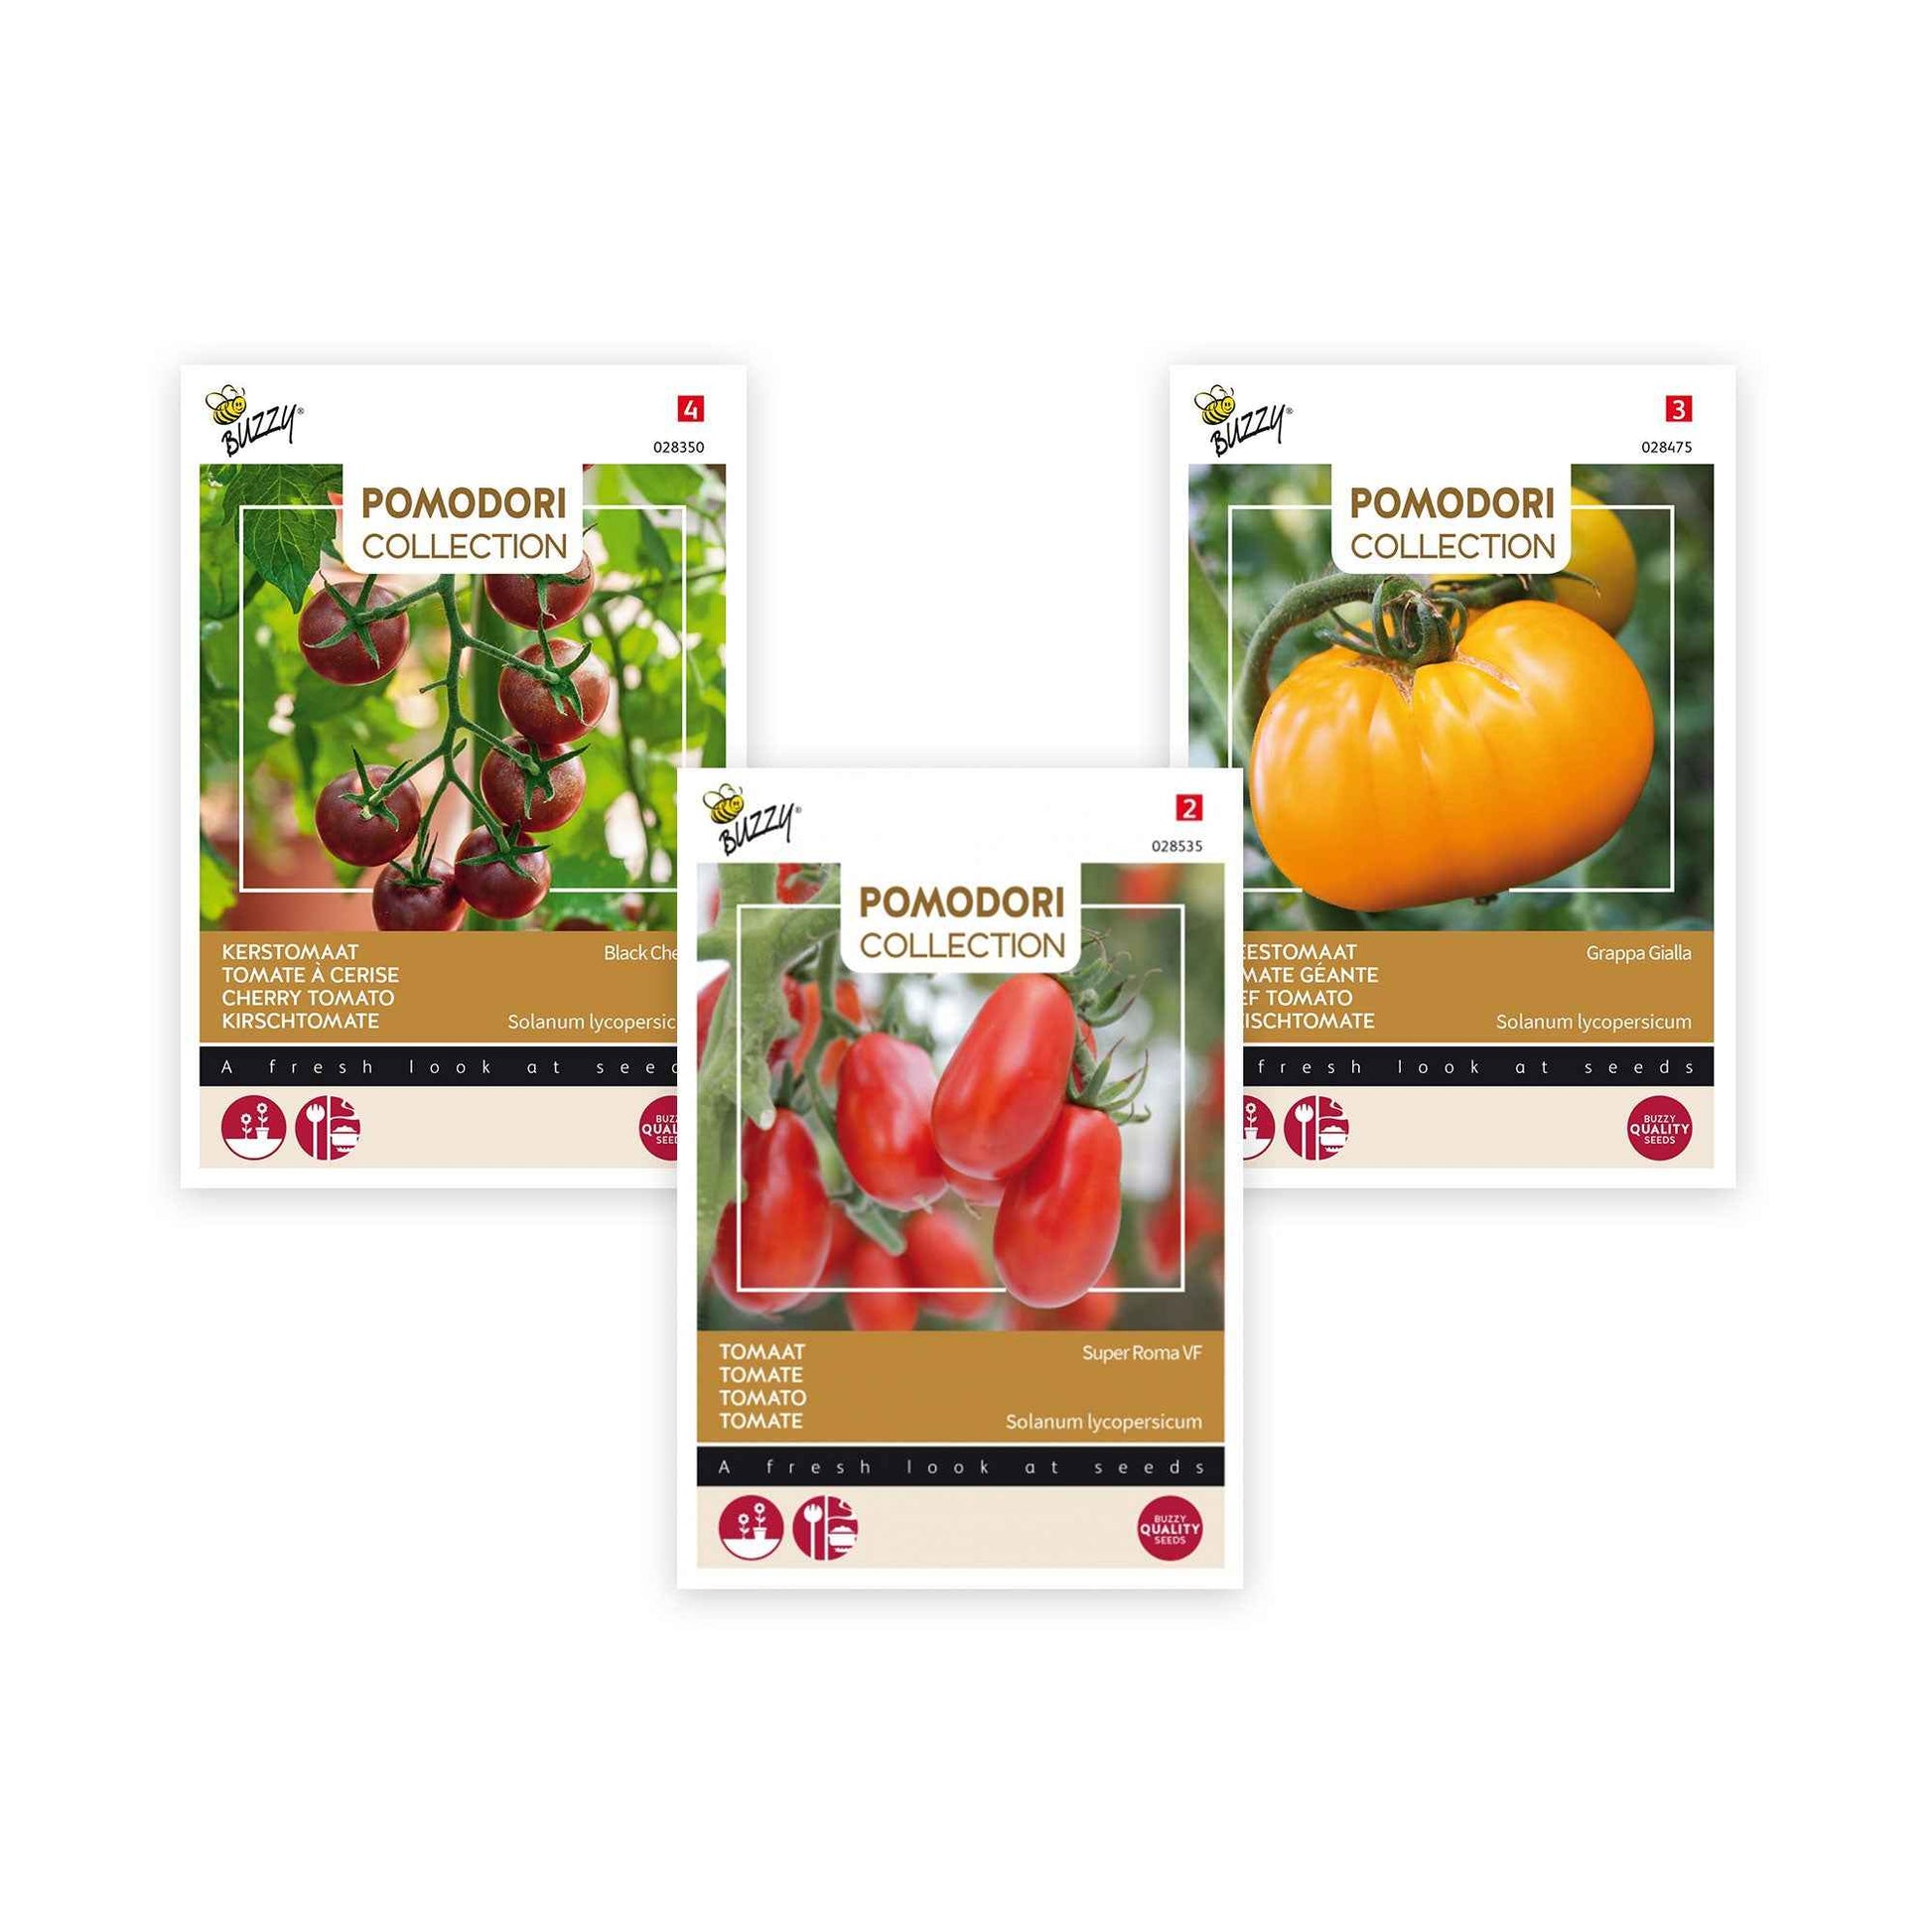 Paquet de tomates Solanum 'Tomates délicates' 7 m² - Semences de légumes - Graines de Légumes